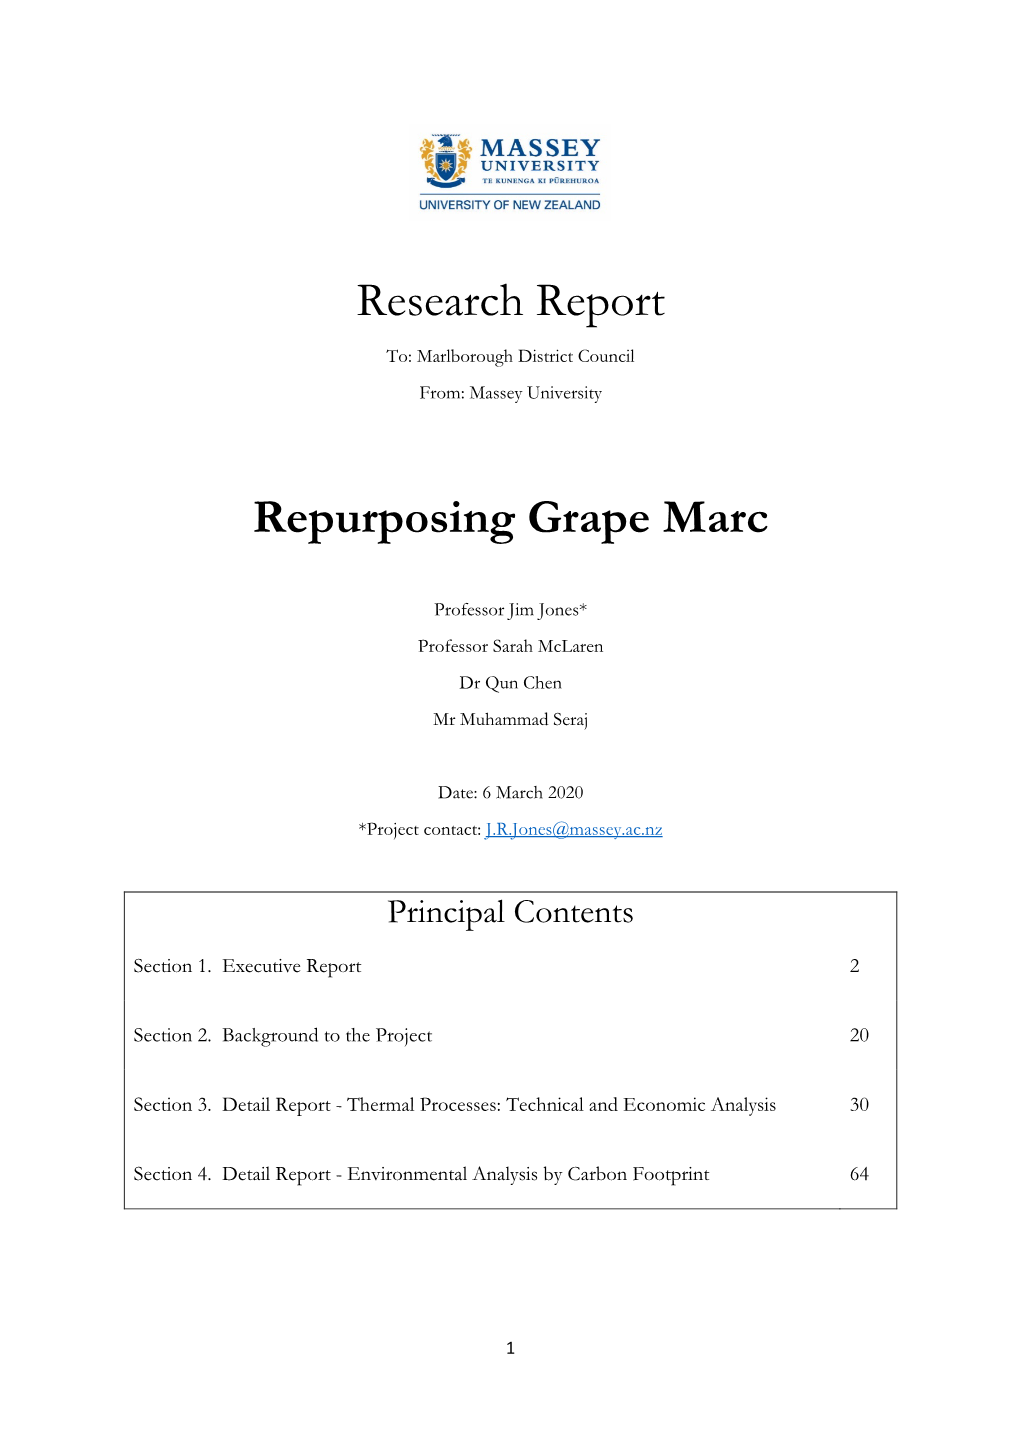 Research Report Repurposing Grape Marc